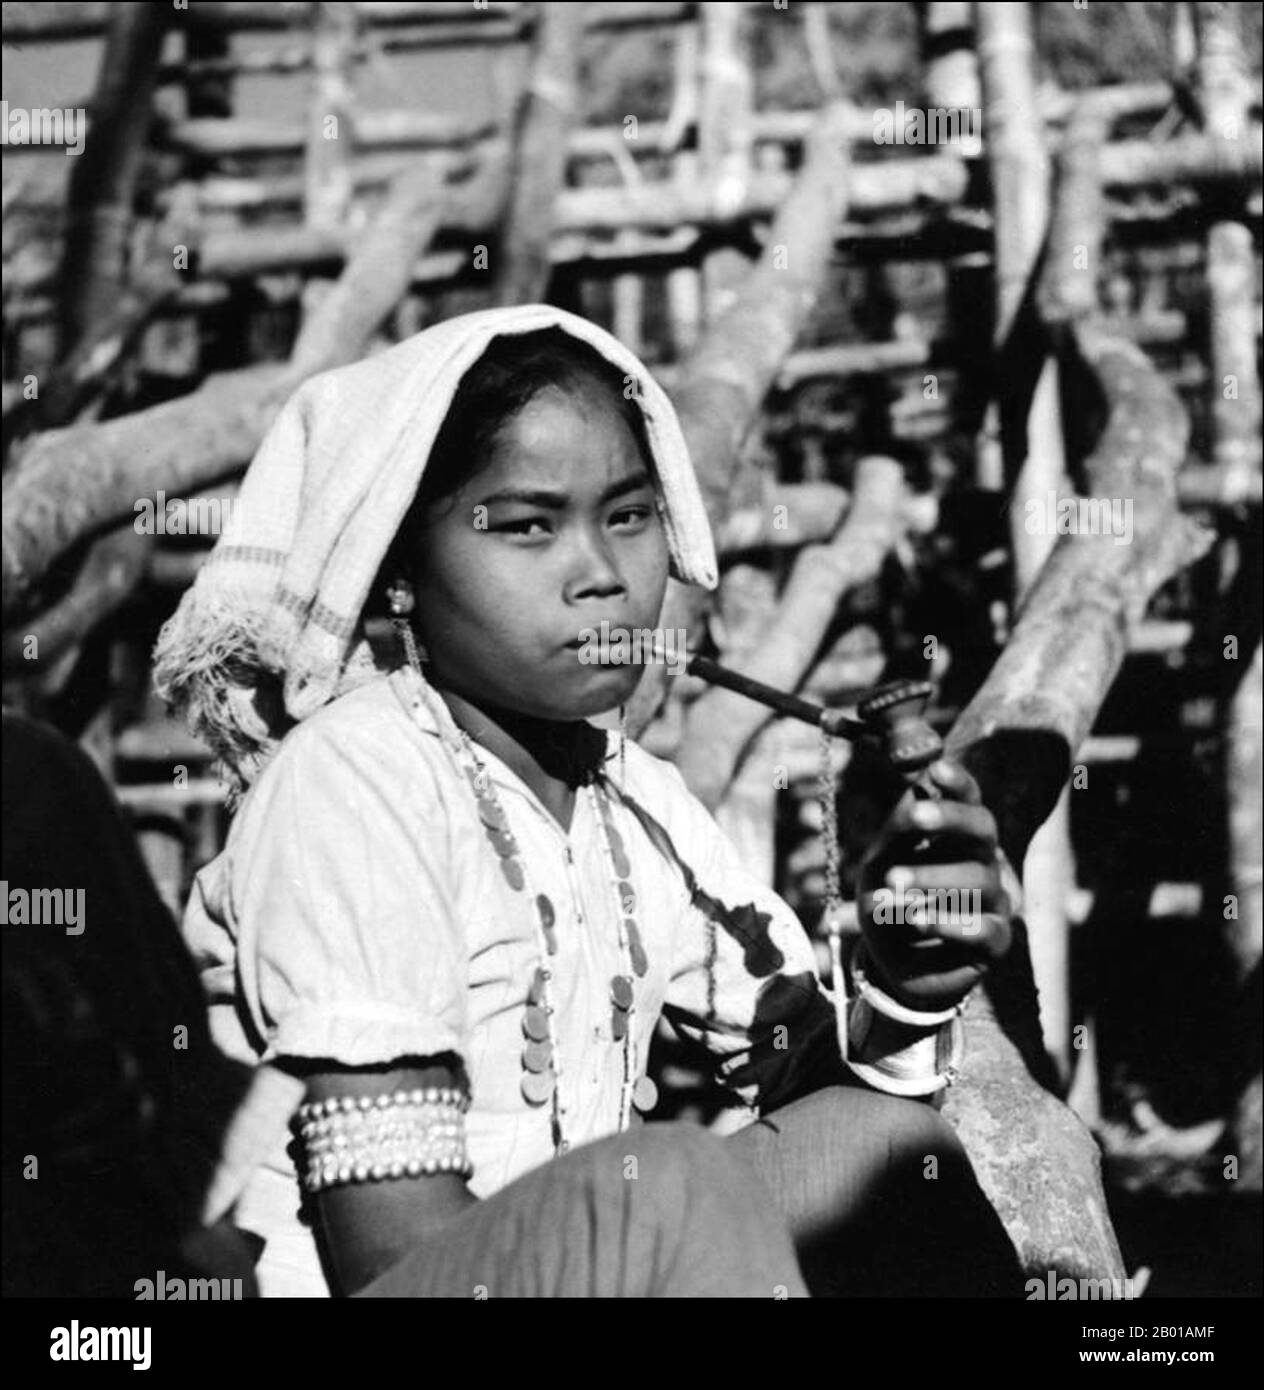 Bangladesch: Eine junge Marma Frau raucht eine Pfeife, c. 1947. Die Marma, auch als Magh oder Mog bekannt, sind Arakanesen, die seit der Arakan-Königsperiode im 16.. Jahrhundert n. Chr. die Chittagong Hill Tracts von Bangladesch bewohnen. Ende des 20.. Jahrhunderts lag ihre Bevölkerung bei über 210.000. Ethnisch mit den Burmesen verwandt, sind sie weitgehend Anhänger des Theravada-Buddhismus. Sie sind die zweitgrößte ethnische Minderheit in Bangladesch. Die meisten Marmas leben in den drei Hügelvierteln Rangamati, Bandarban und Khagrachhari. Stockfoto